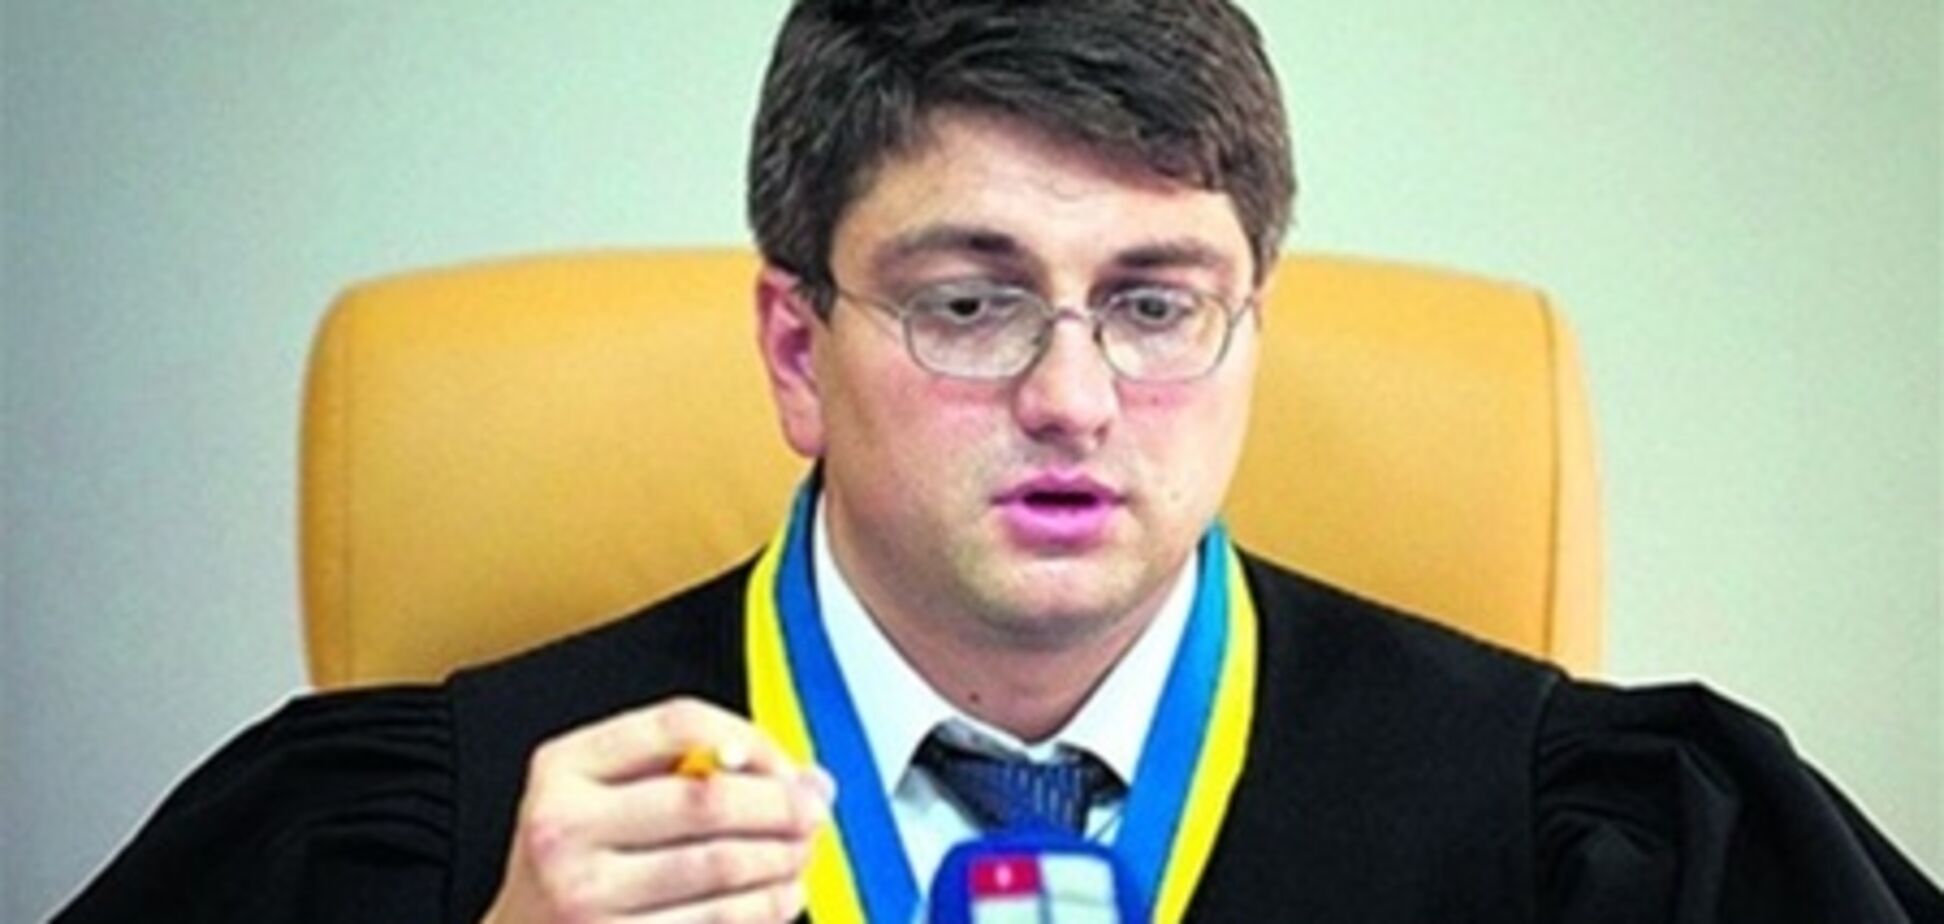 У Киреева спросят, кем был Власенко - 'защитником' или 'адвокатом'